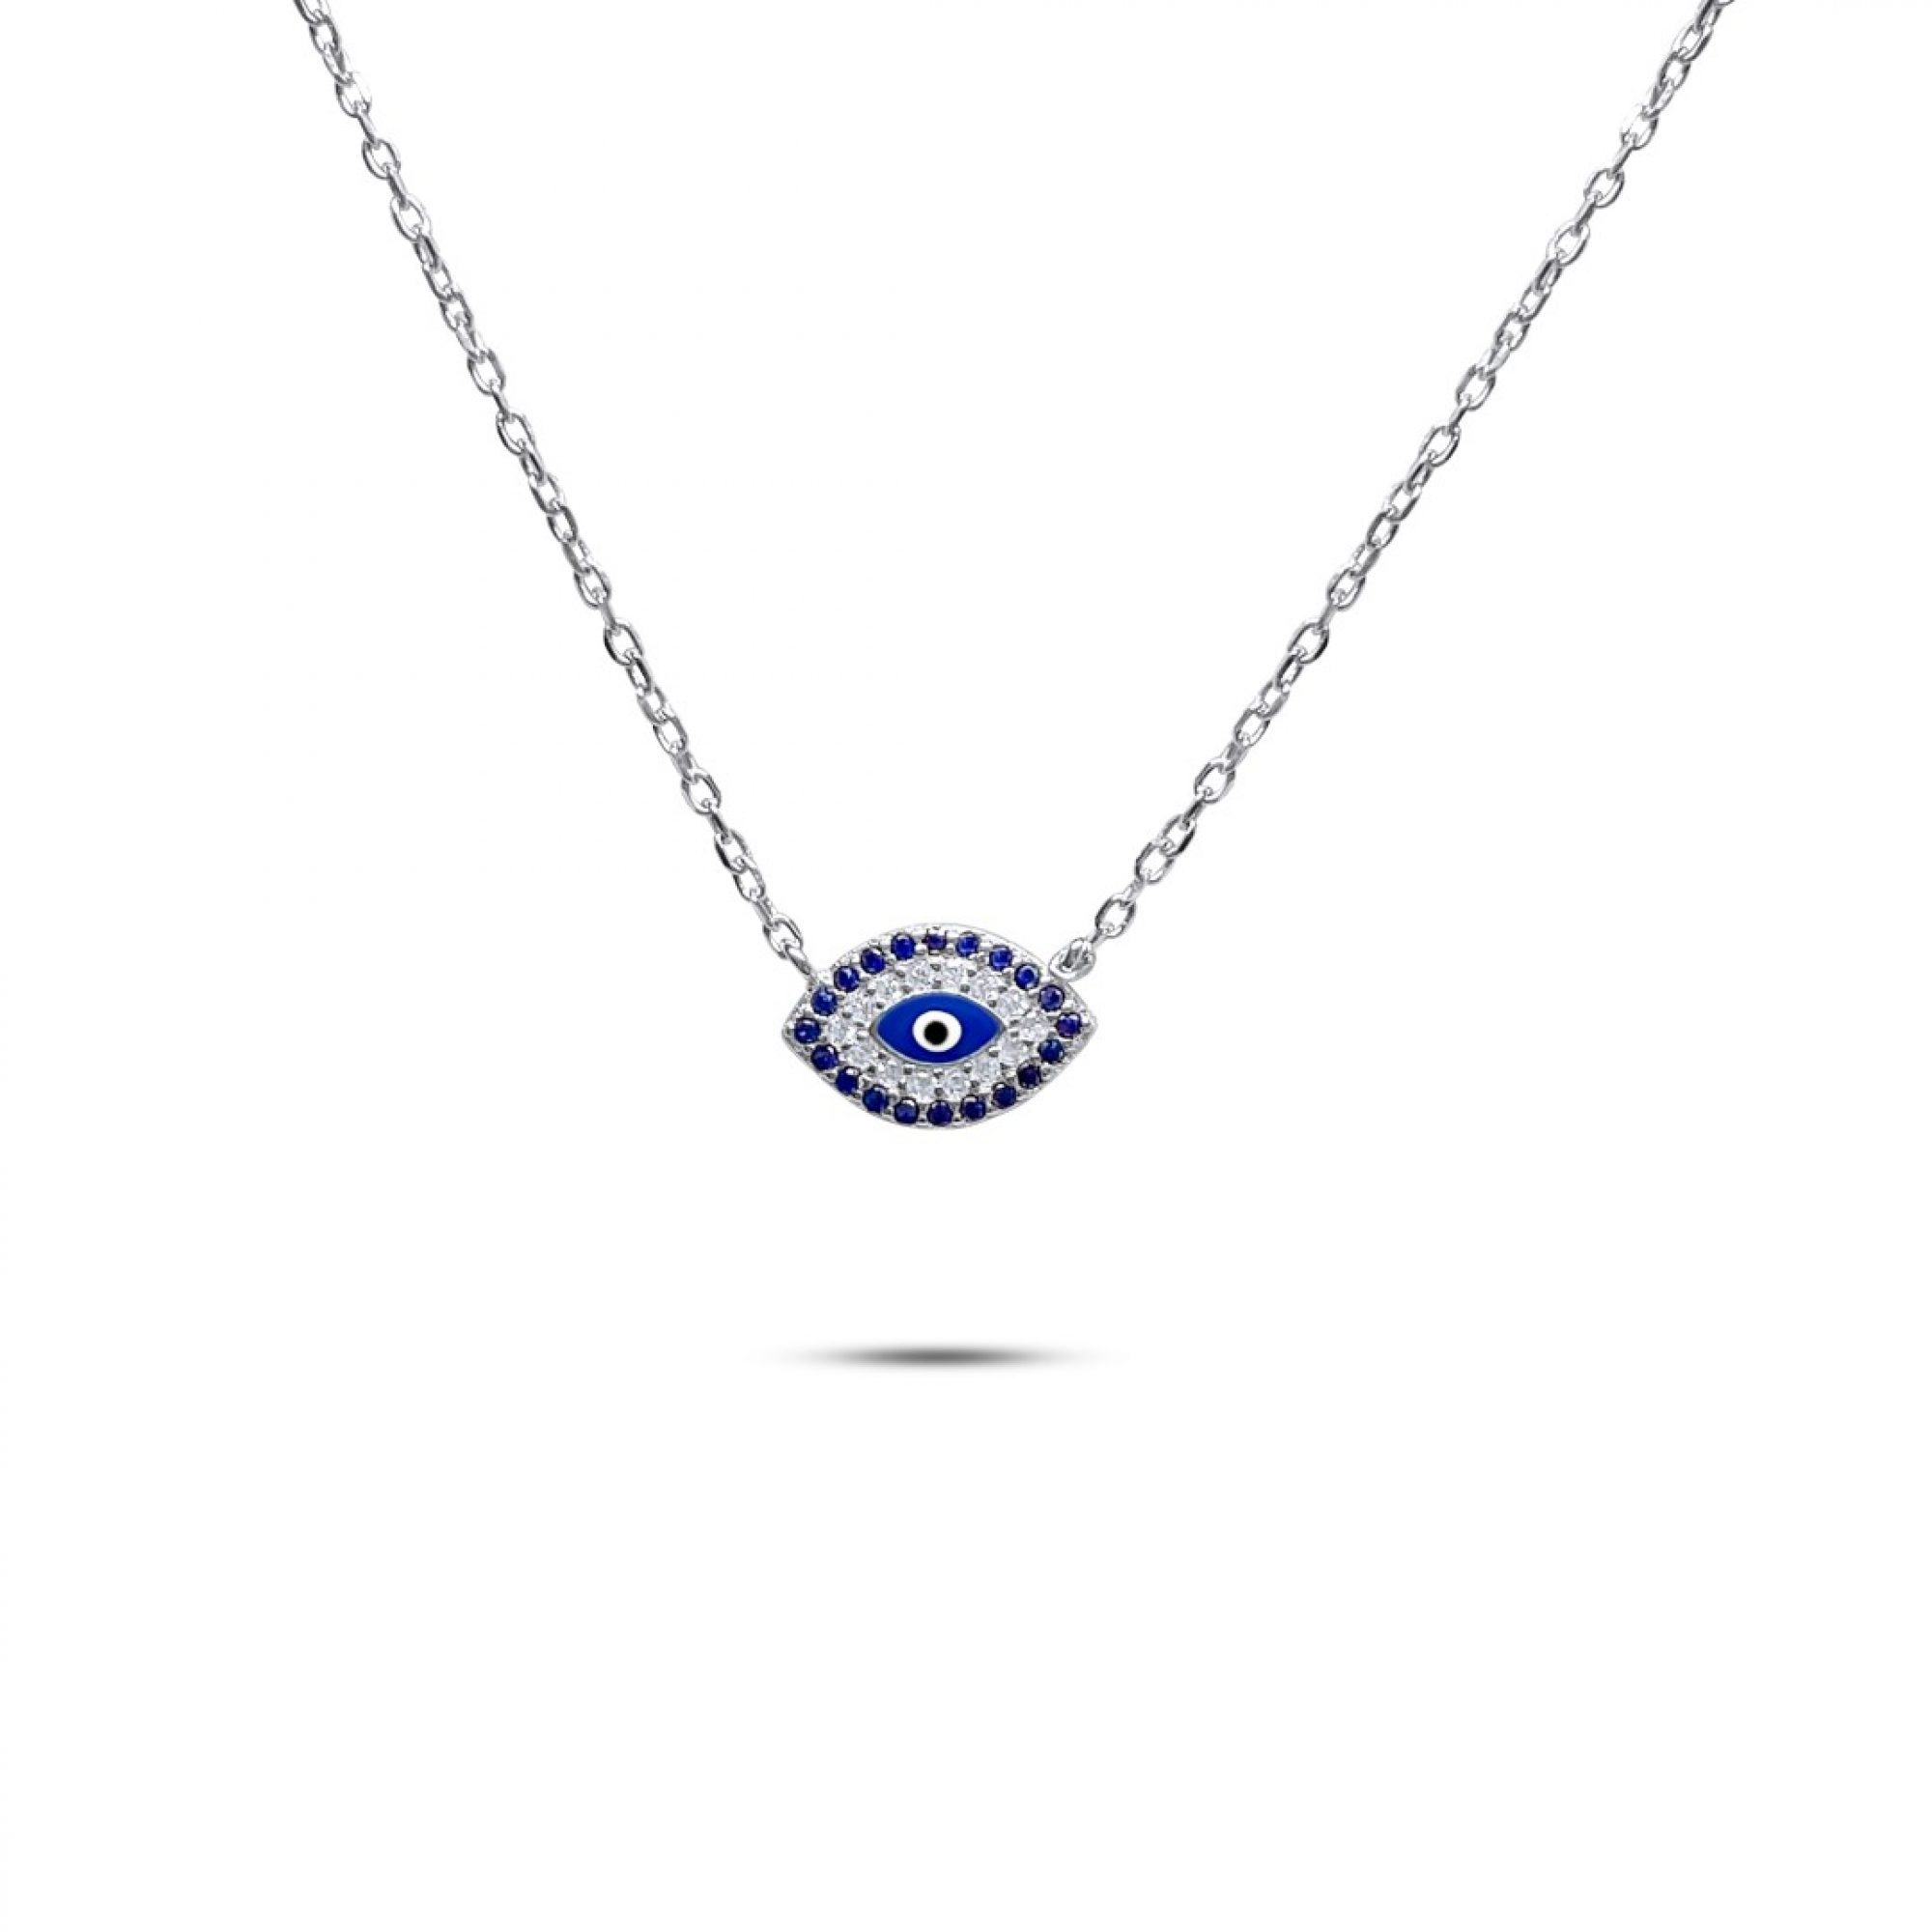 Eye necklace with zircon stones